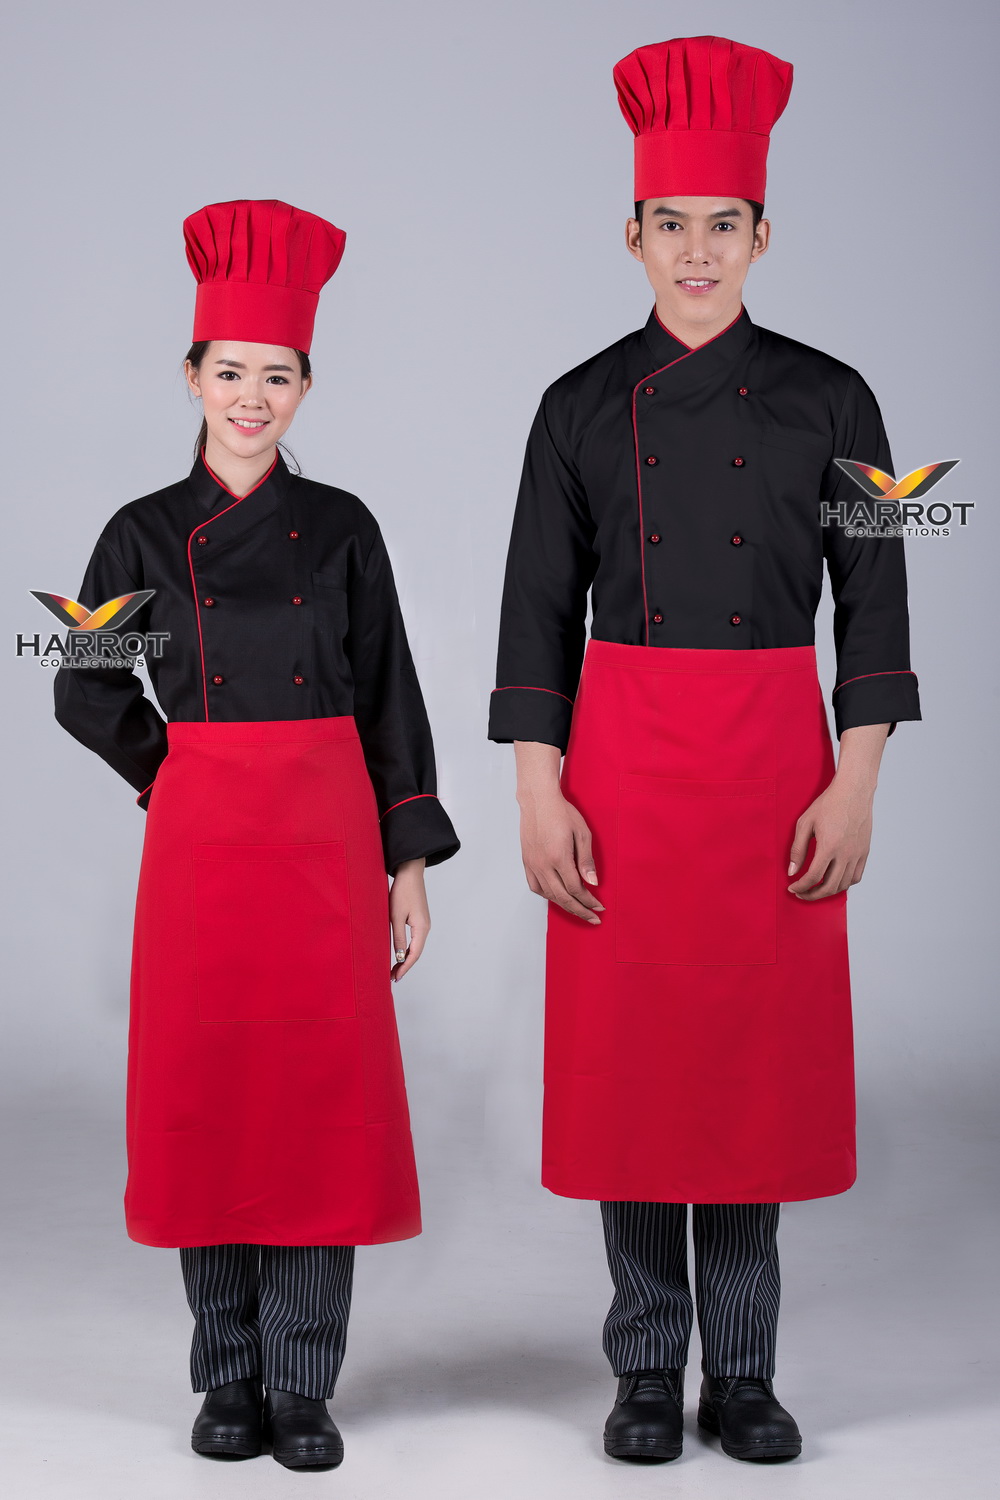 เสื้อกุ๊ก เสื้อเชฟ ชุดเชฟ เสื้อพ่อครัว แขนยาว คอป้าย สีดำกุ๊นแดง กระดุมถอดได้ สีแดง (FSS0513)